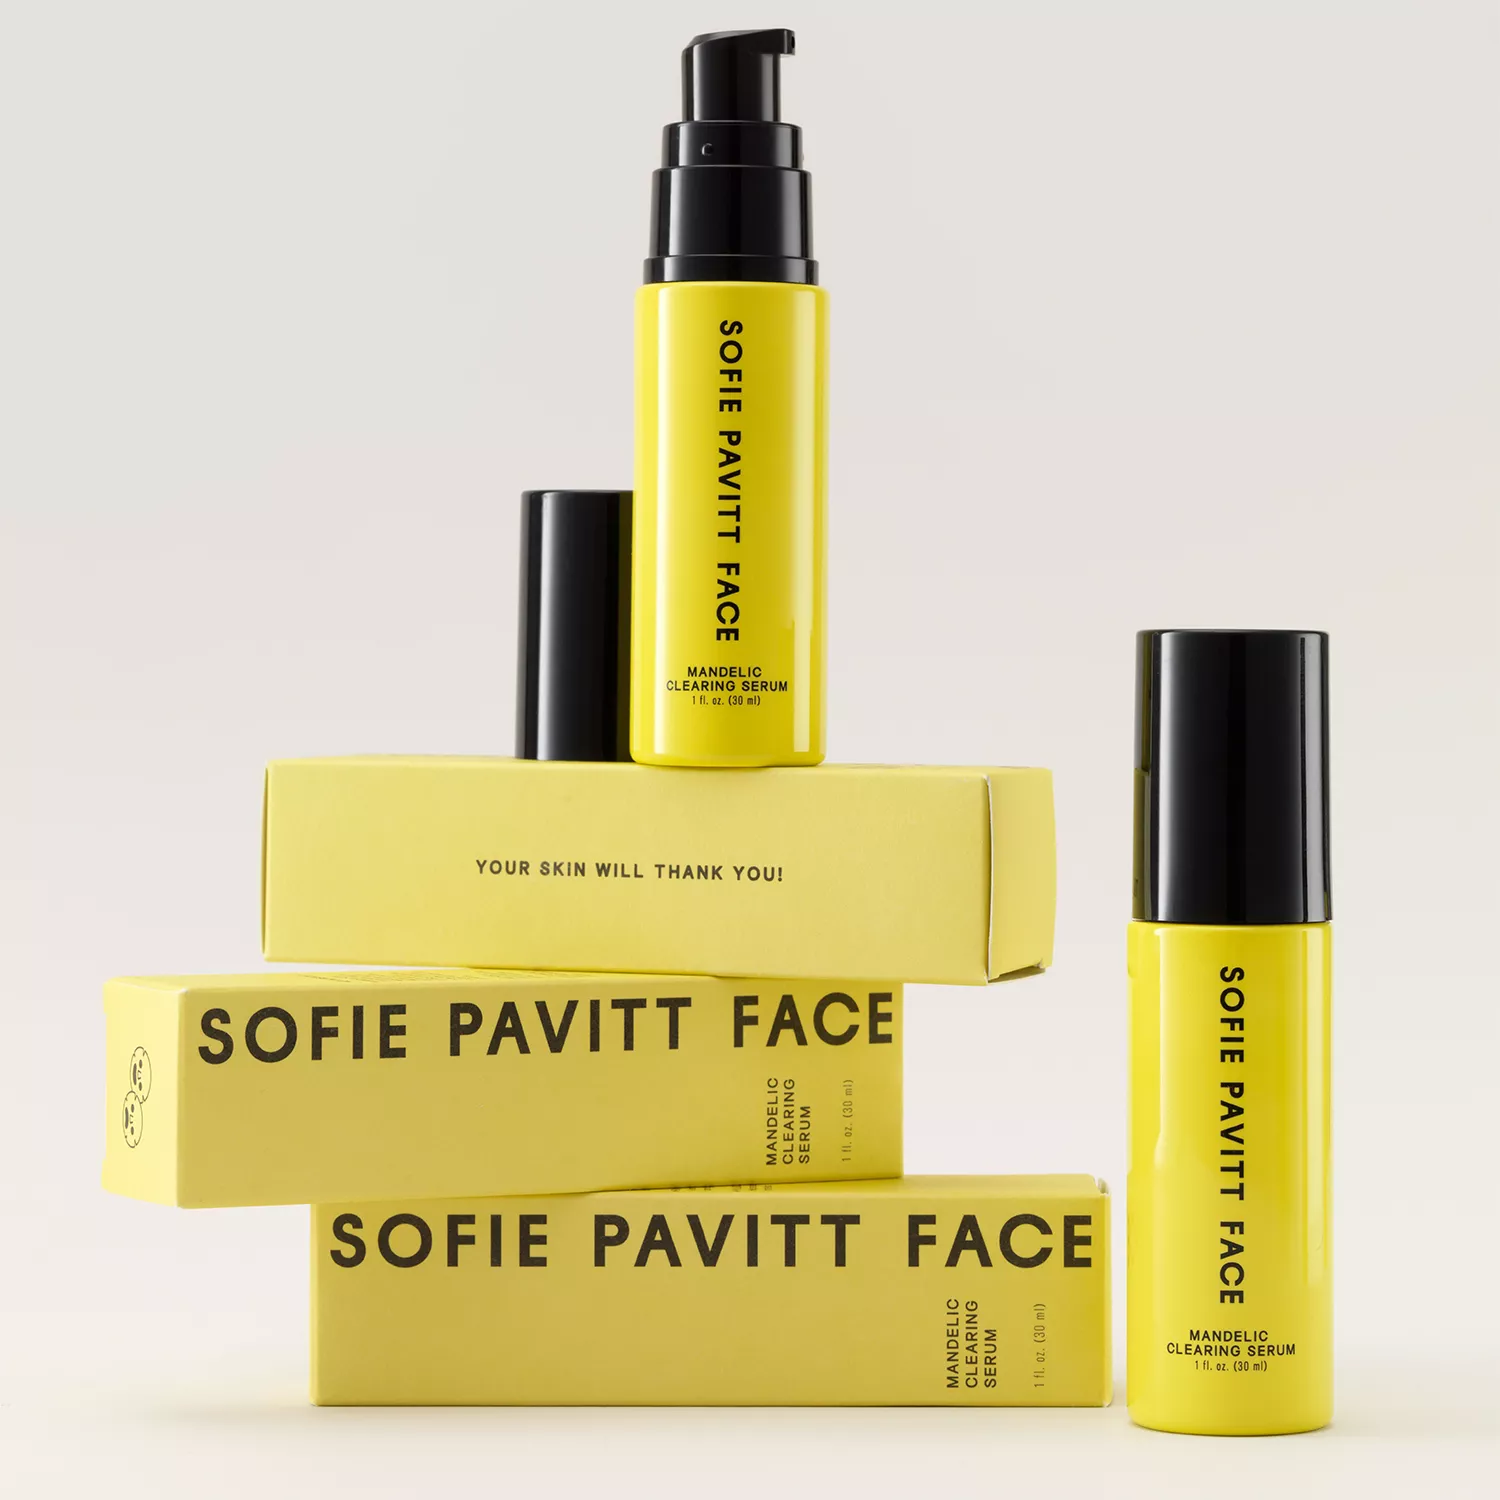 Sofie Pavitt Skin bottles 